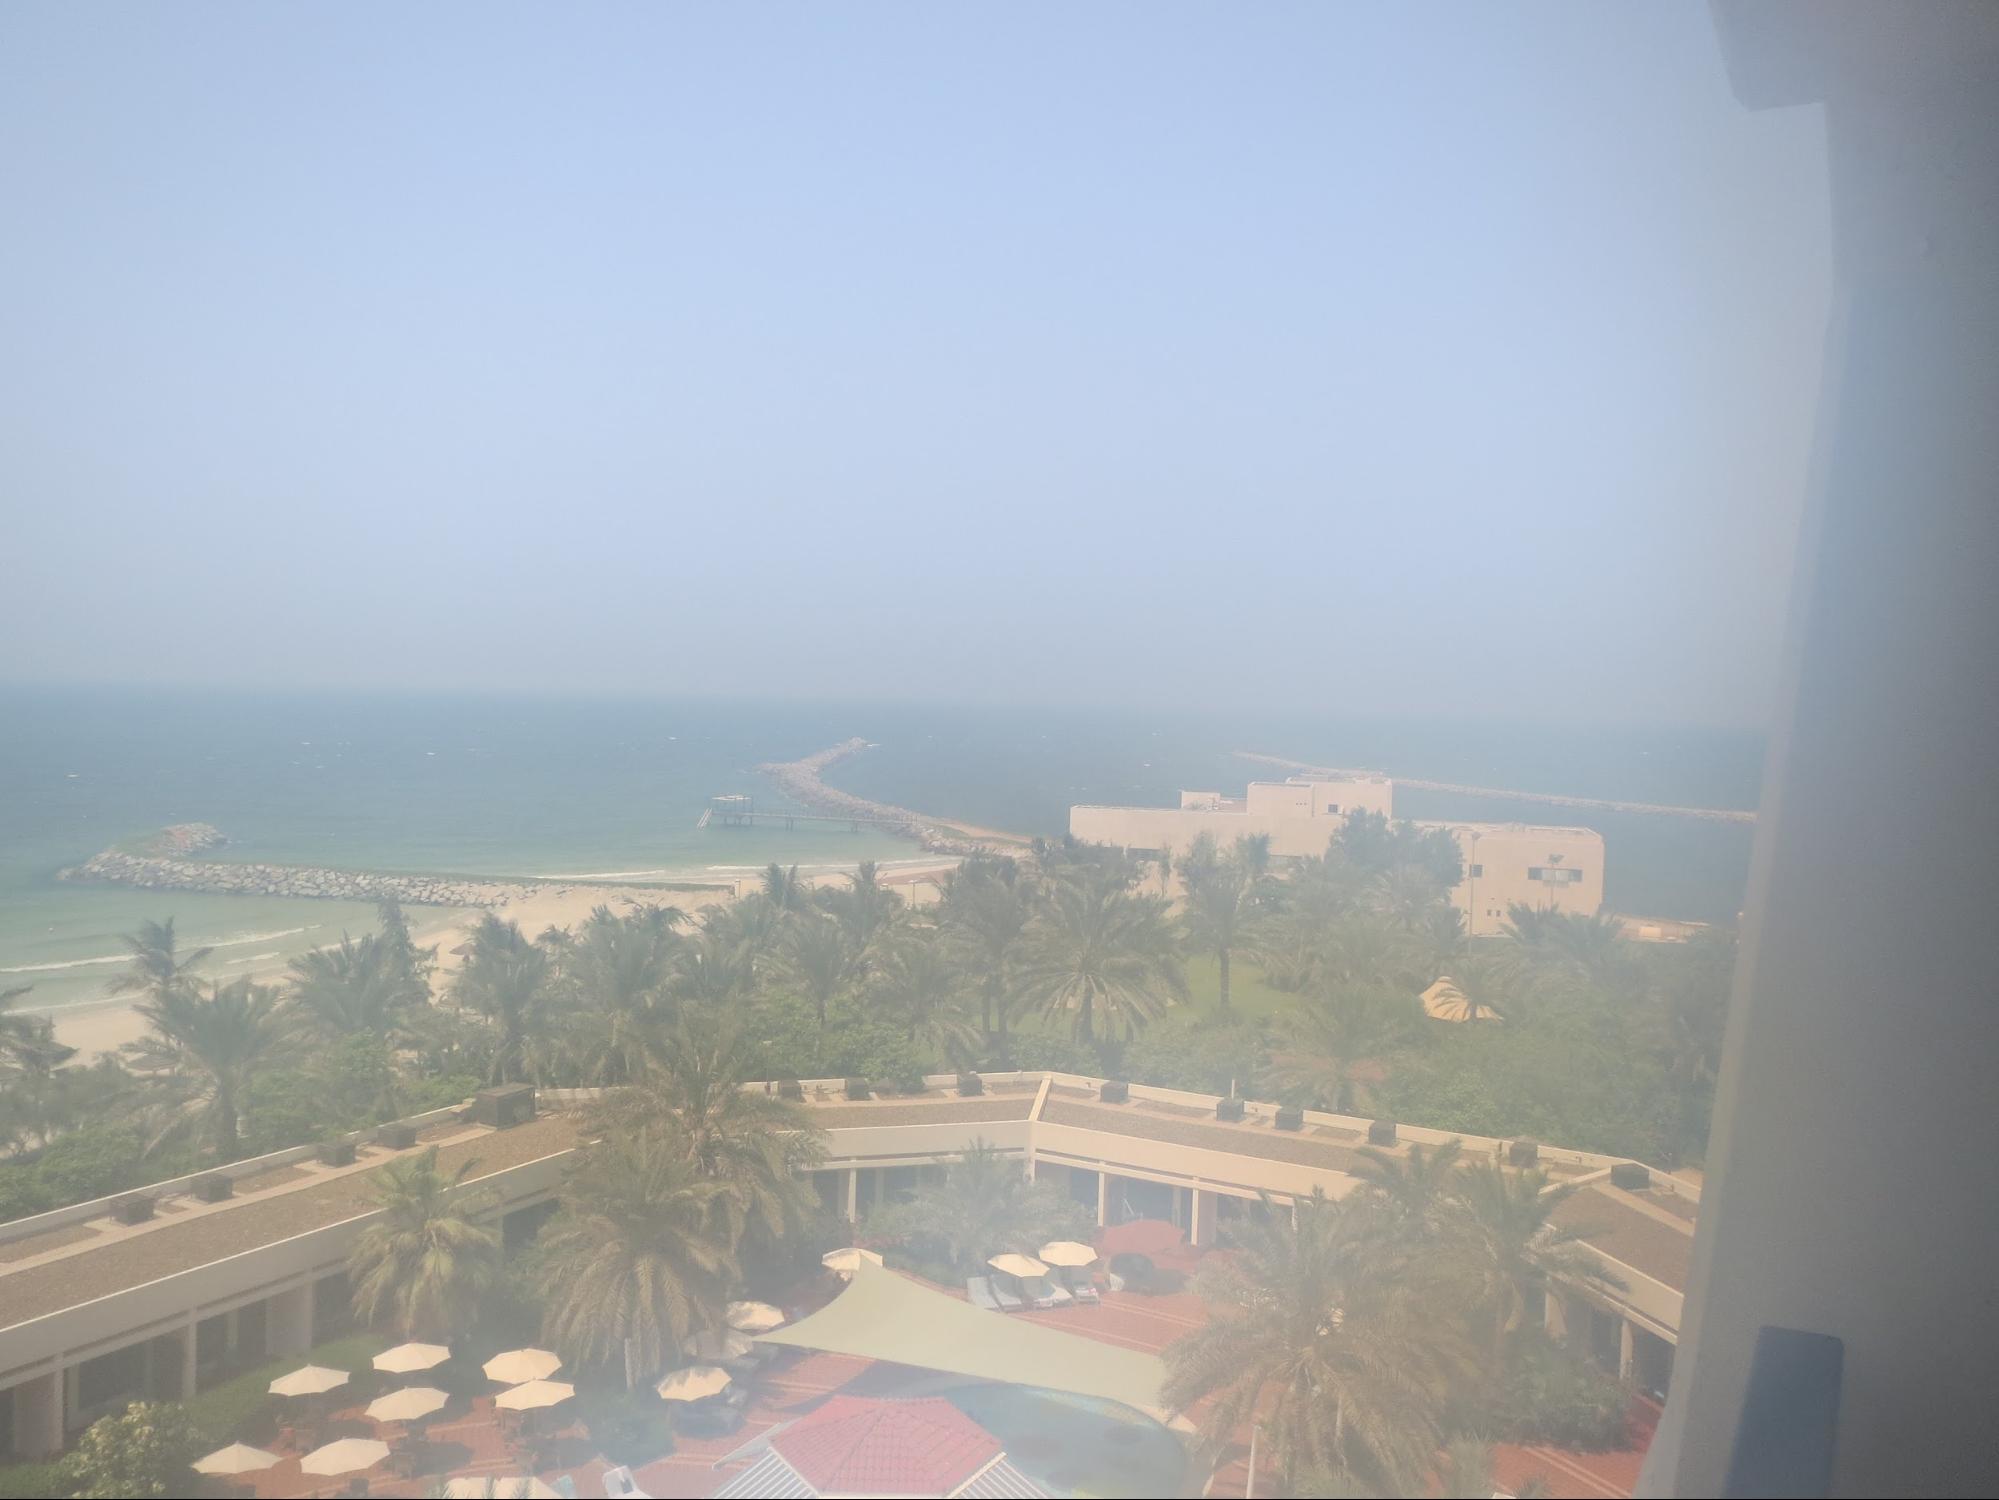 Kempinski Hotel, Ajman Review - Balcony Outside View - palm gardens, pool & beach